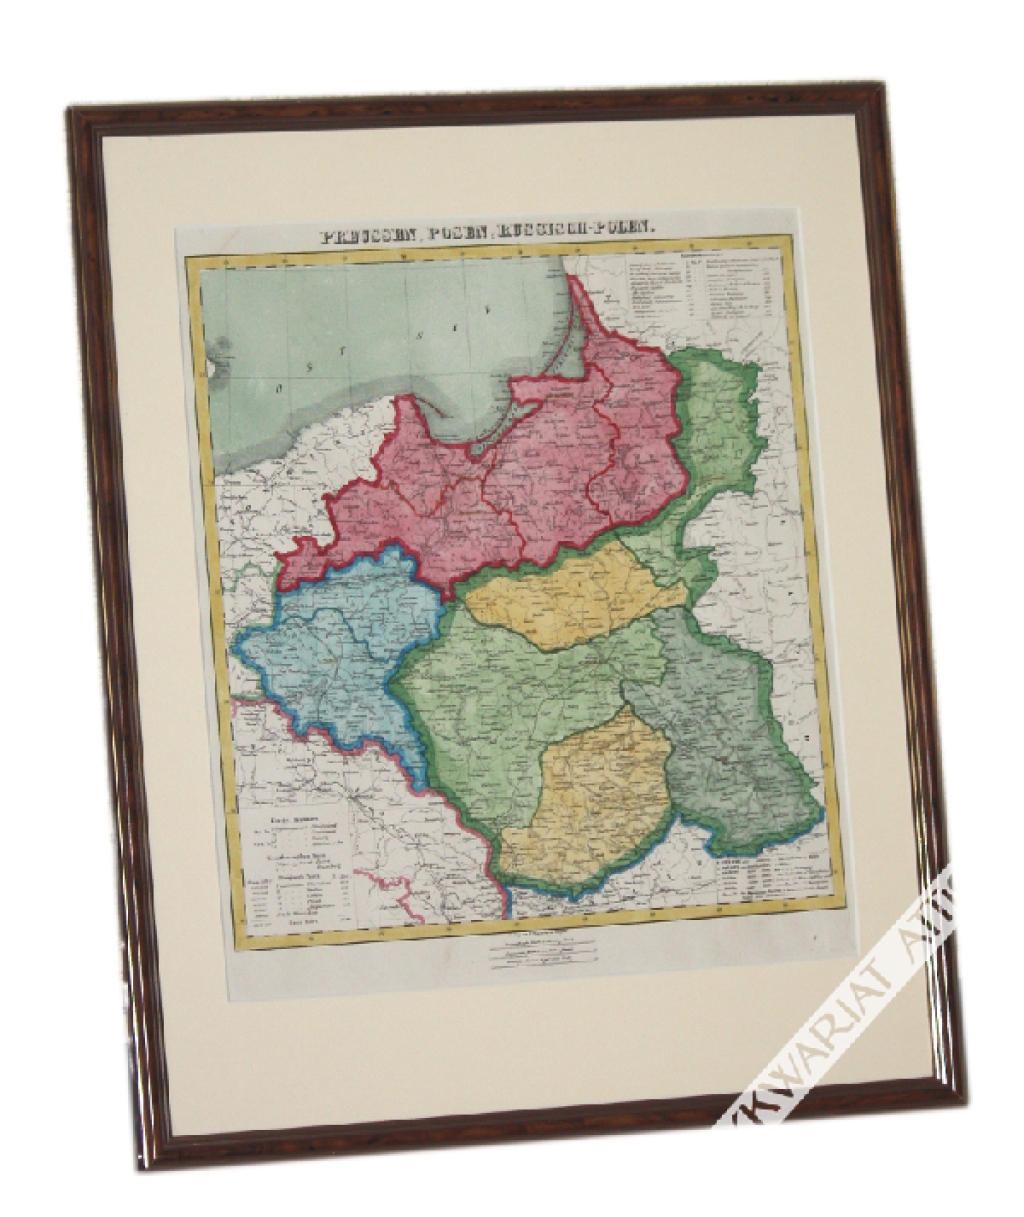 [mapa, Pomorze, Wielkopolska, Królestwo Polskie, 1853] Preussen, Posen, Russisch-Polen